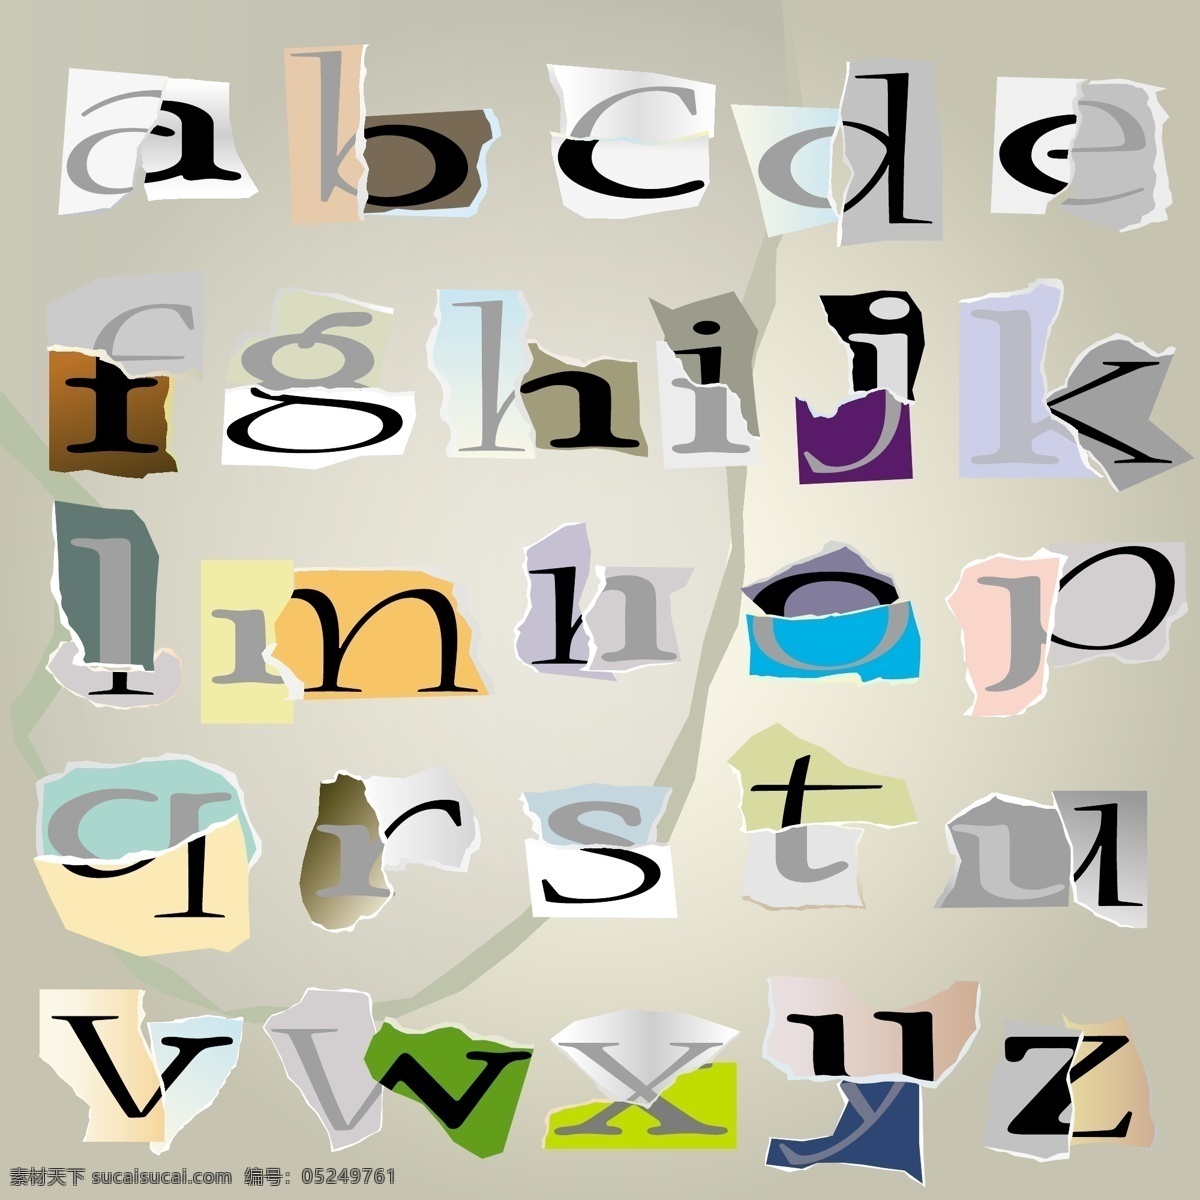 非 主流 撕 纸 字母 矢量 eps矢量 非主流 字母图片 撕痕字母 拼纸字母 免费字母 矢量图 艺术字